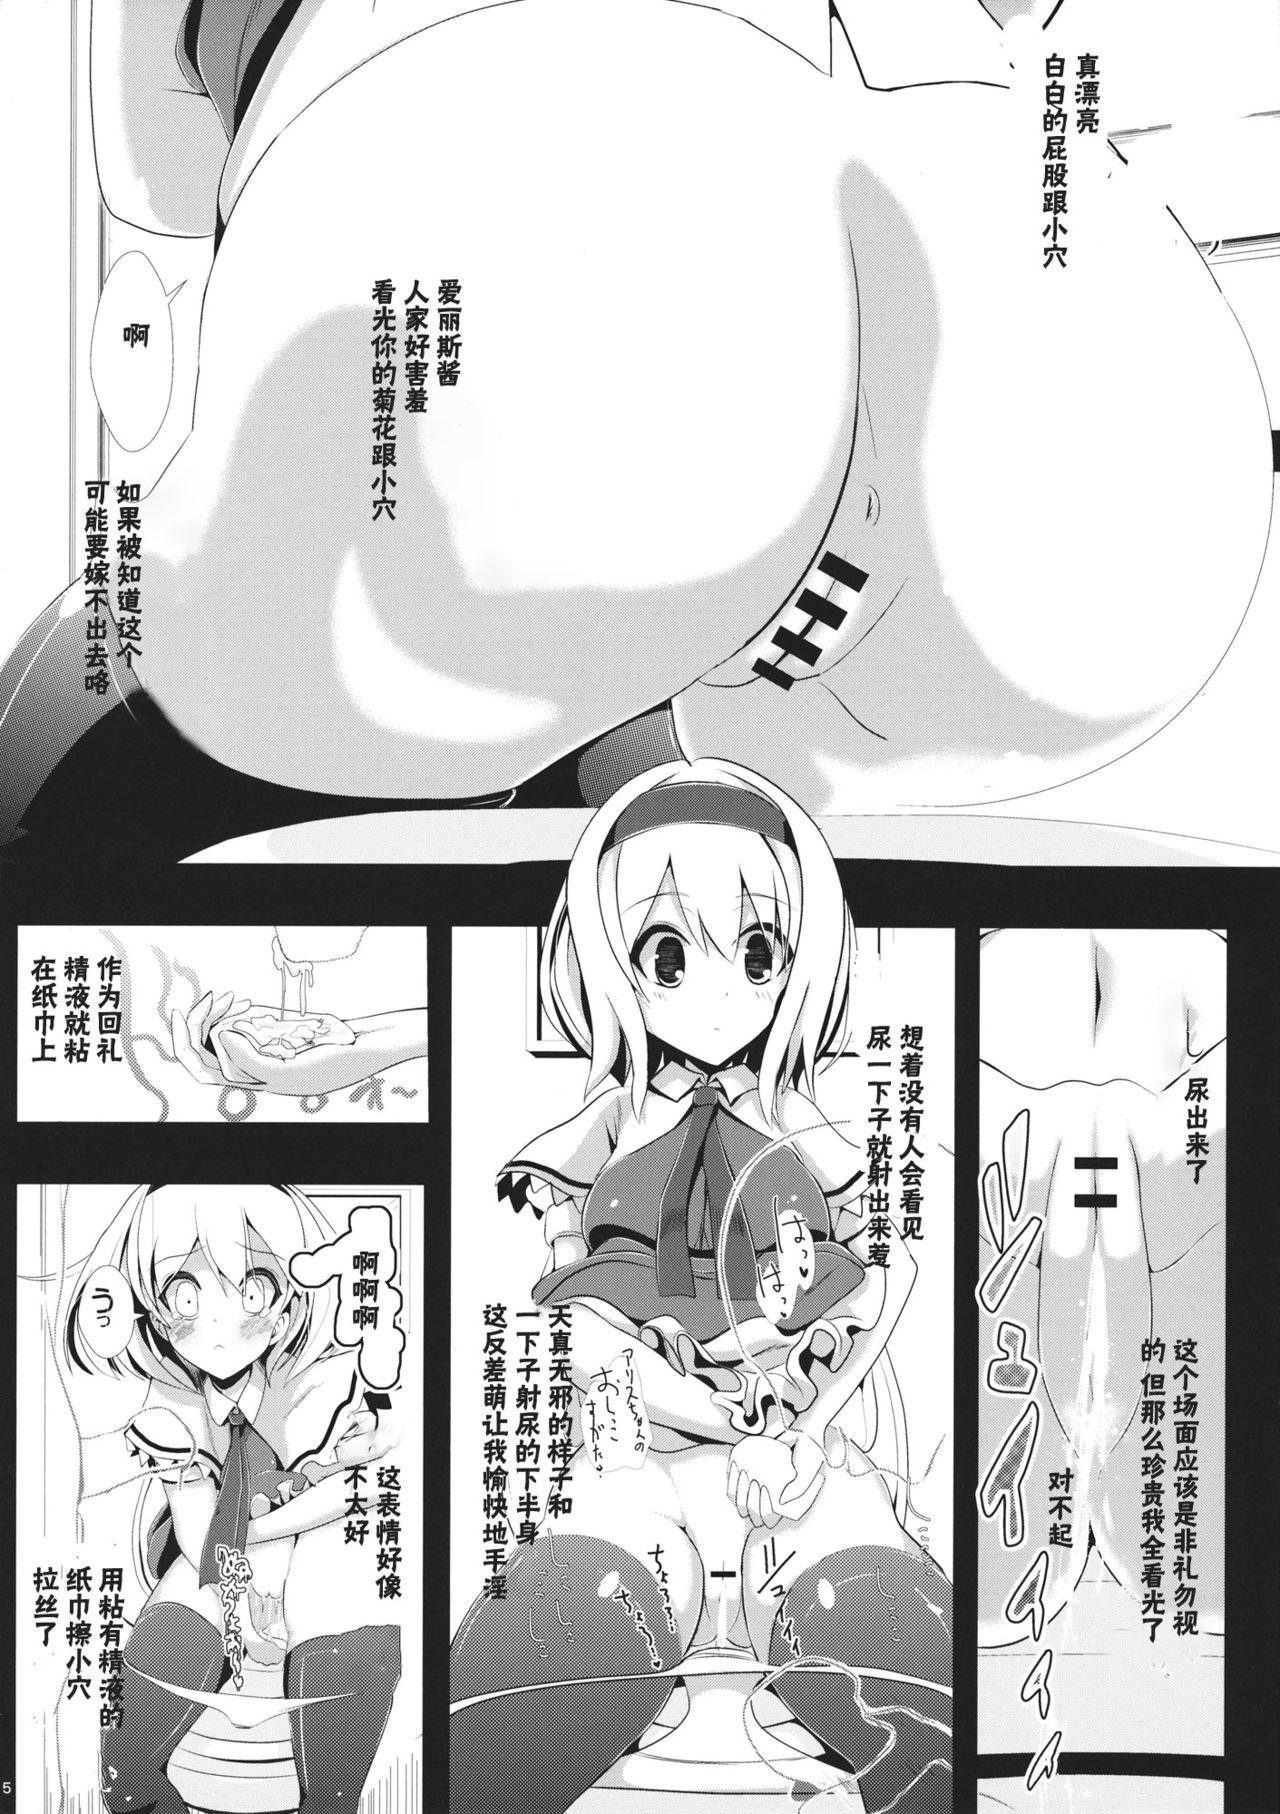 Monster Cock Touhou Toumei Ningen 1 Shinnyuu Alice n Chi - Touhou project Pegging - Page 6